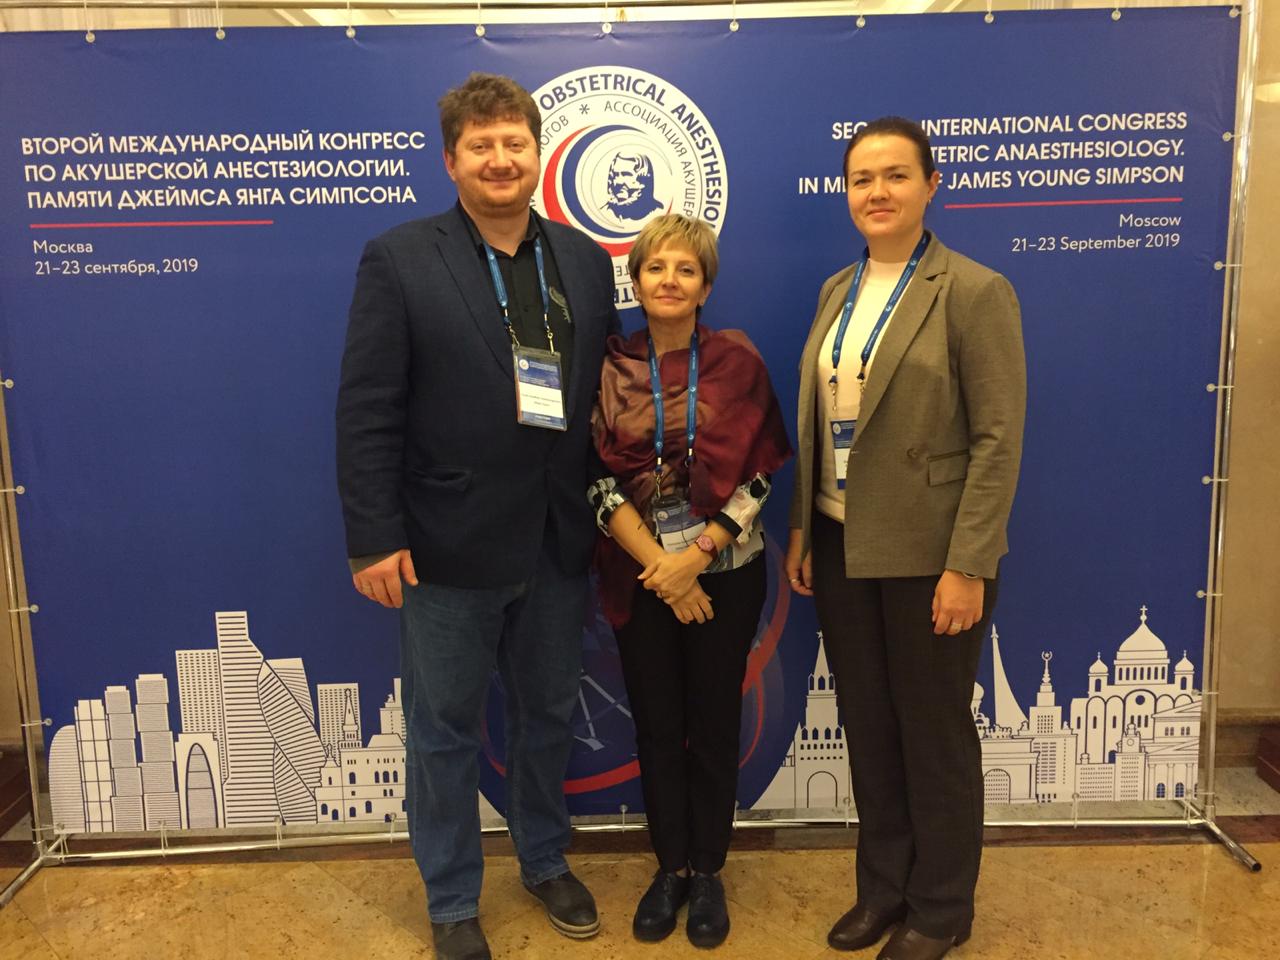 Анестезиологи роддома больницы Вересаева посетили международный конгресс